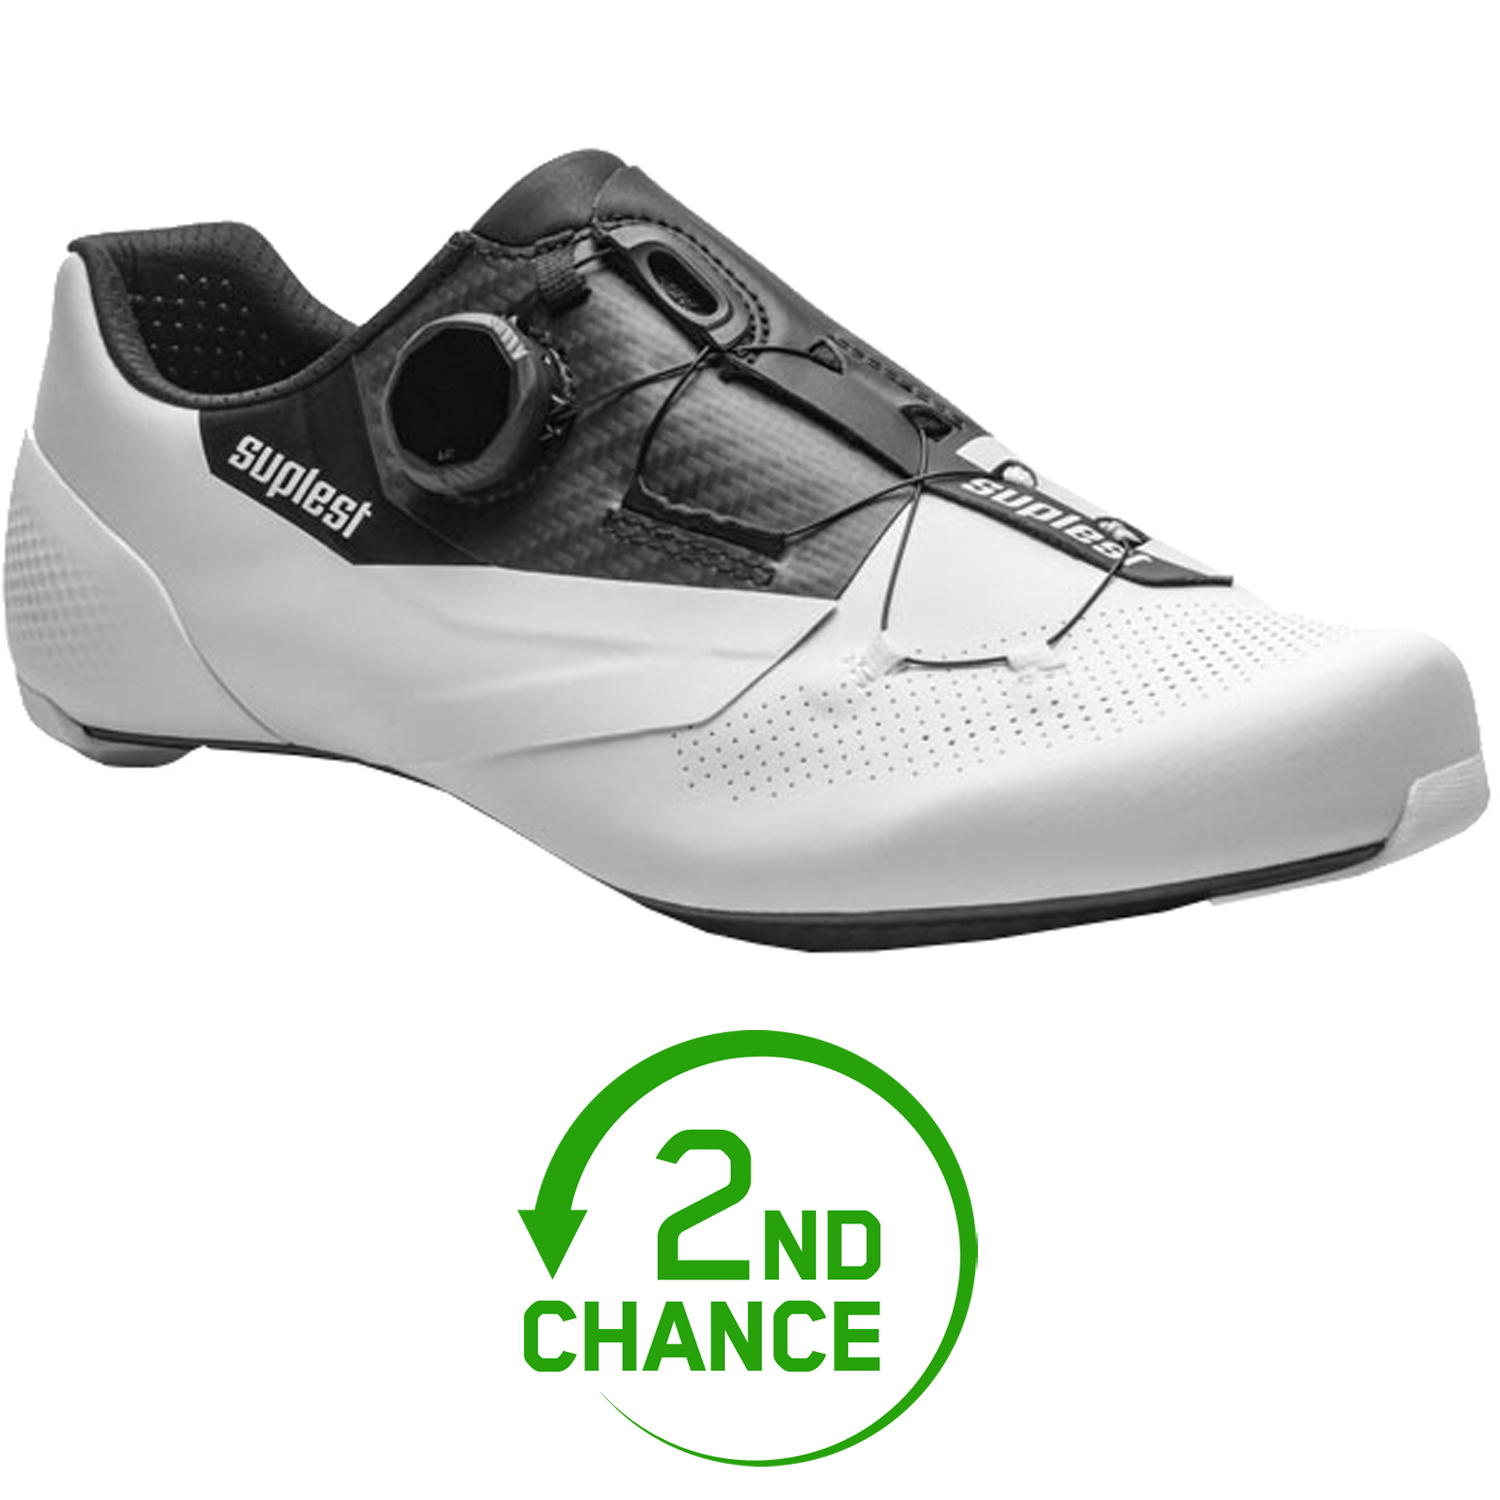 Produktbild von Suplest EDGE+ 2.0 Performance BOA Li2 Carbon Composite Rennradschuhe - weiß/schwarz 01.080. - B-Ware